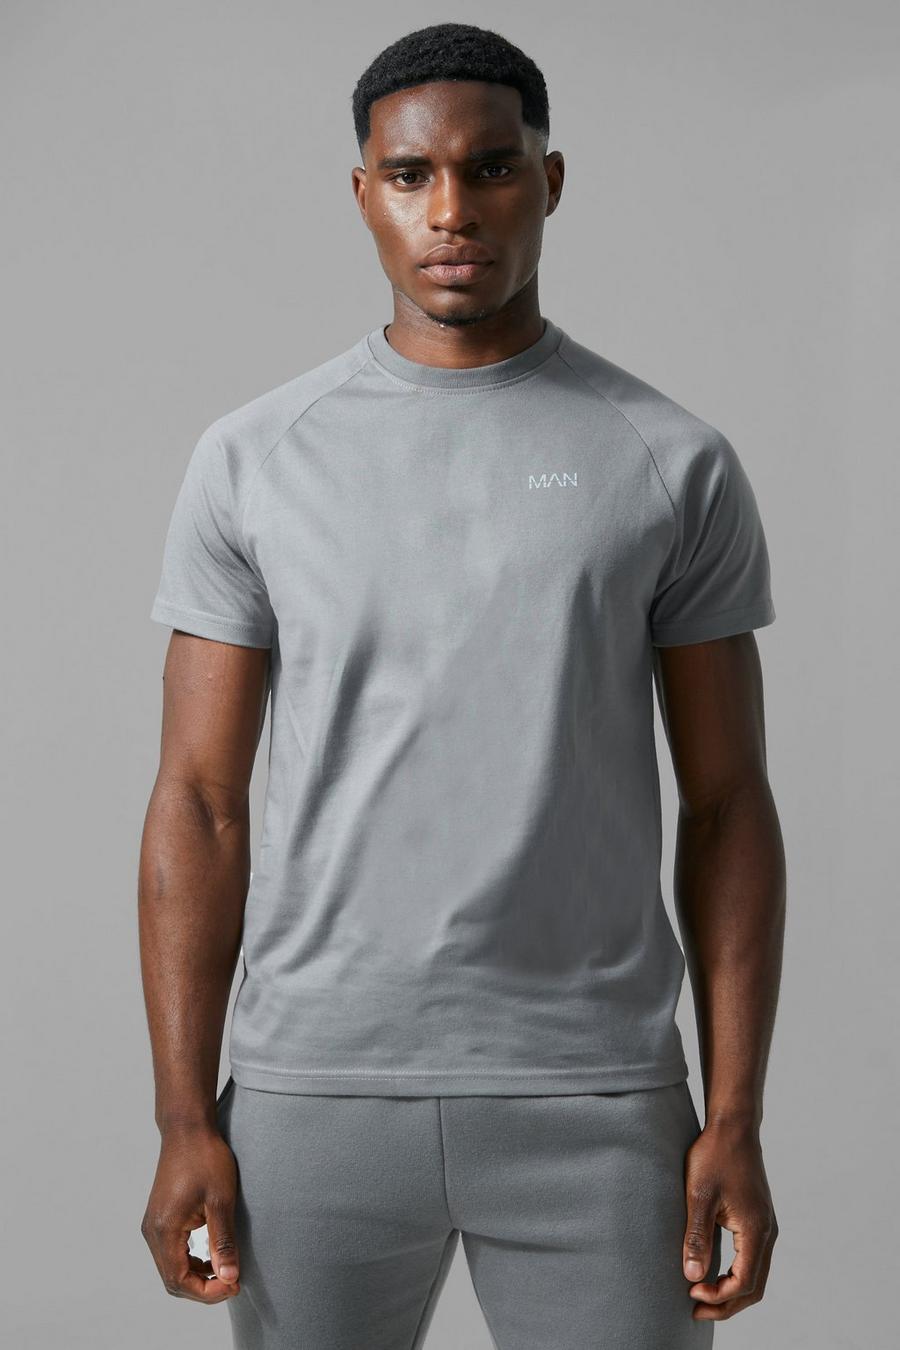 Man Active Raglan T-Shirt, Charcoal gris